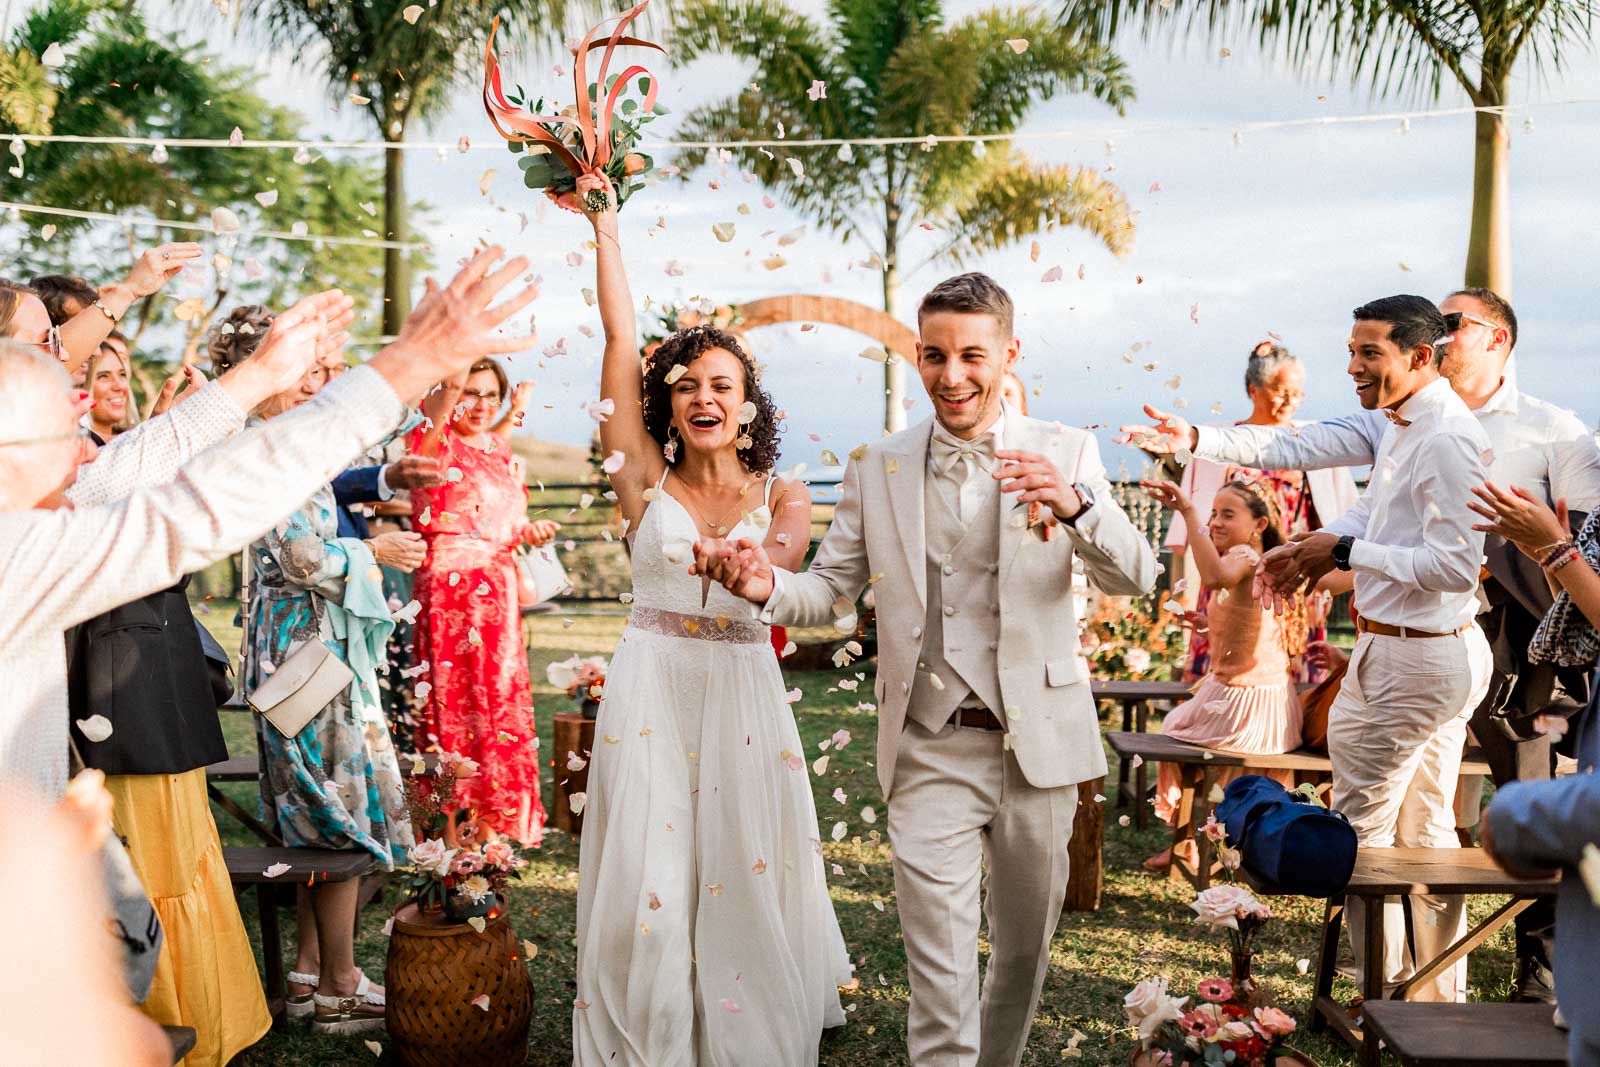 Photographie de Mathieu Dété, photographe de mariage et grossesse à Sainte-Marie, sur l'île de la Réunion 974, présentant la sortie de la cérémonie laïque des mariés, pleine de joie, sous les lancers de pétales de fleurs